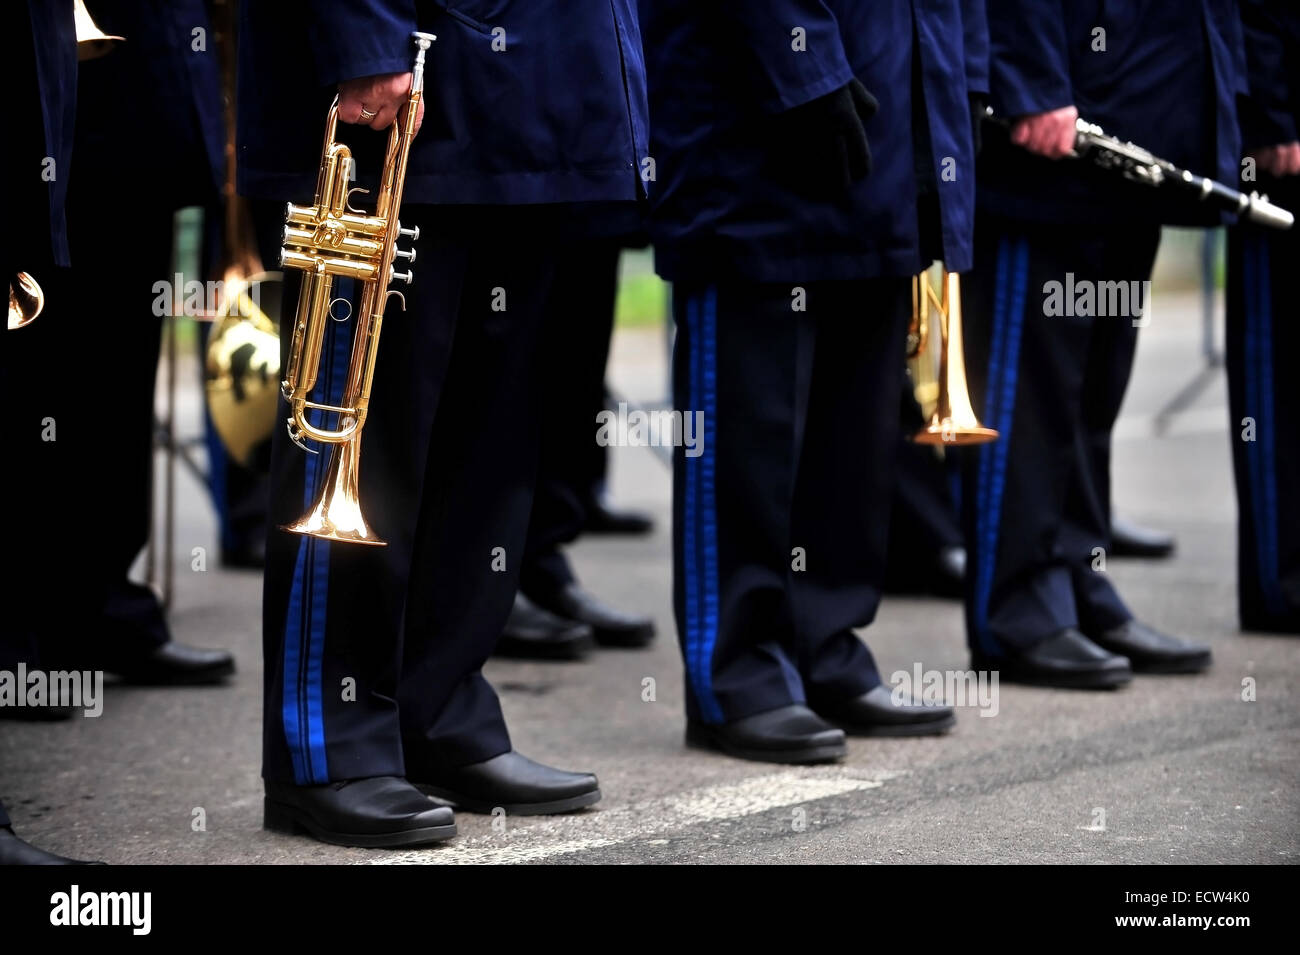 Detalle con orquesta militar durante el desfile de uniformes Foto de stock